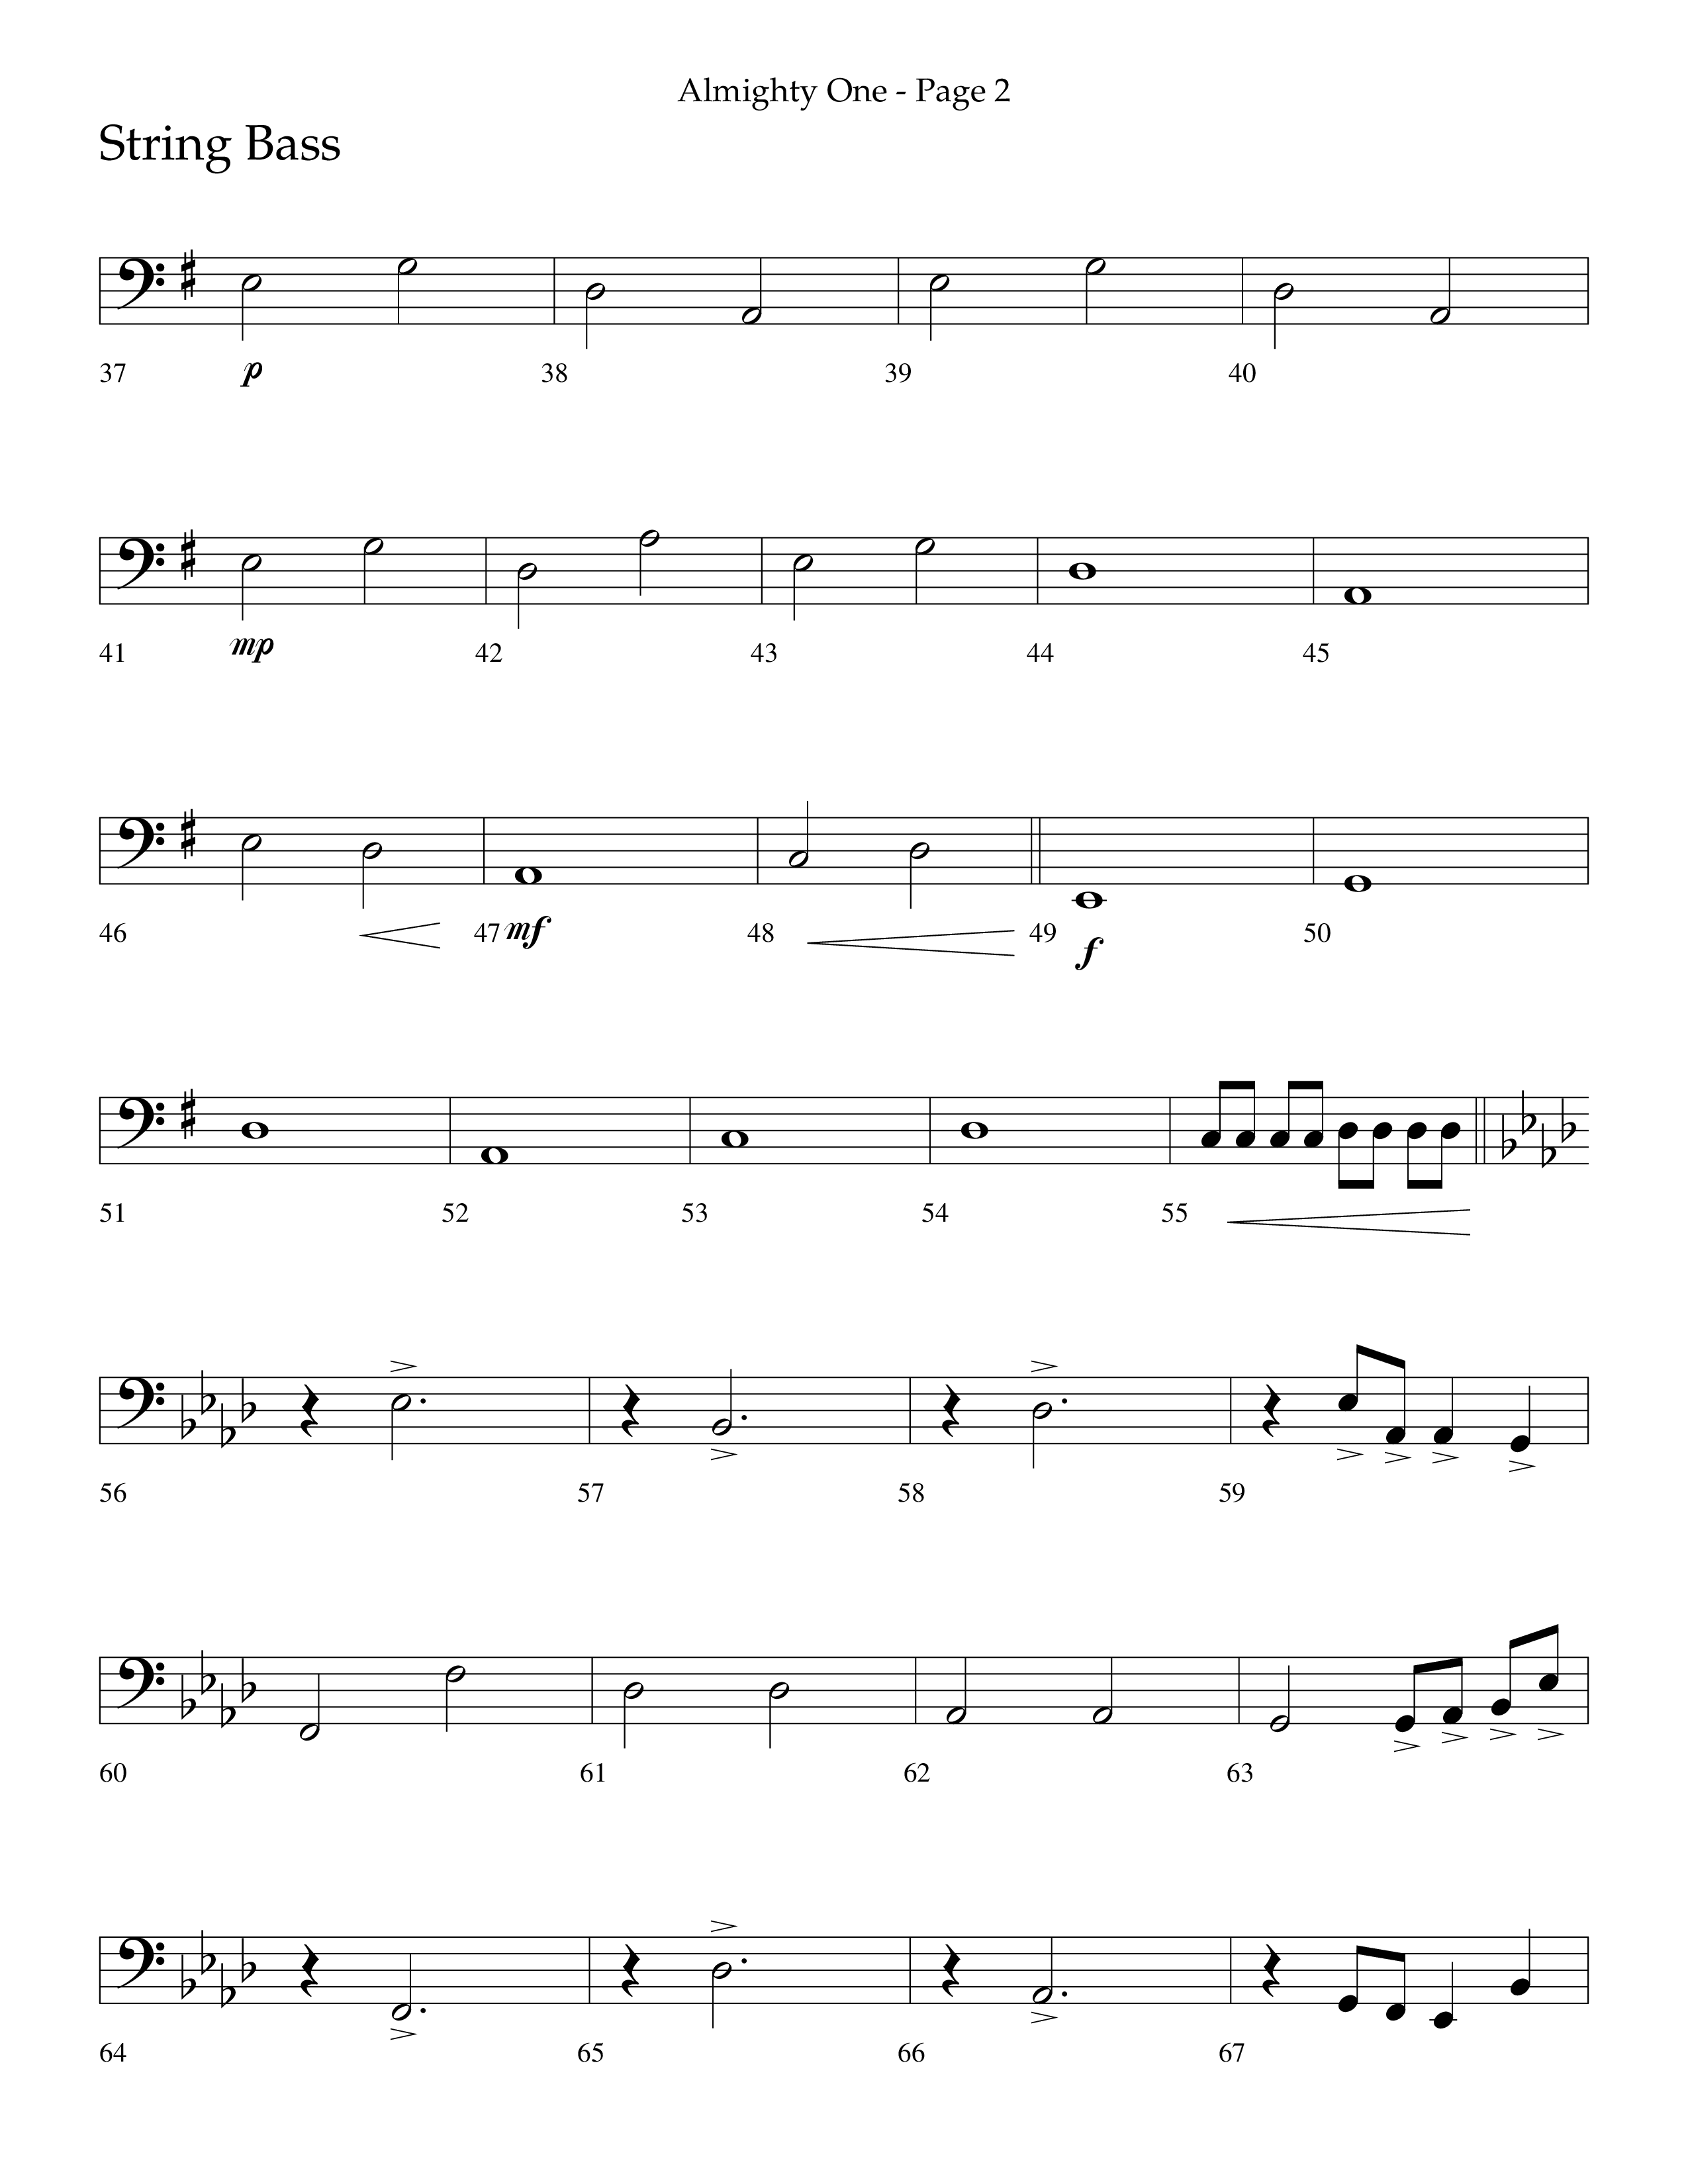 Almighty One (Choral Anthem SATB) String Bass (Lifeway Choral / Arr. Bradley Knight)